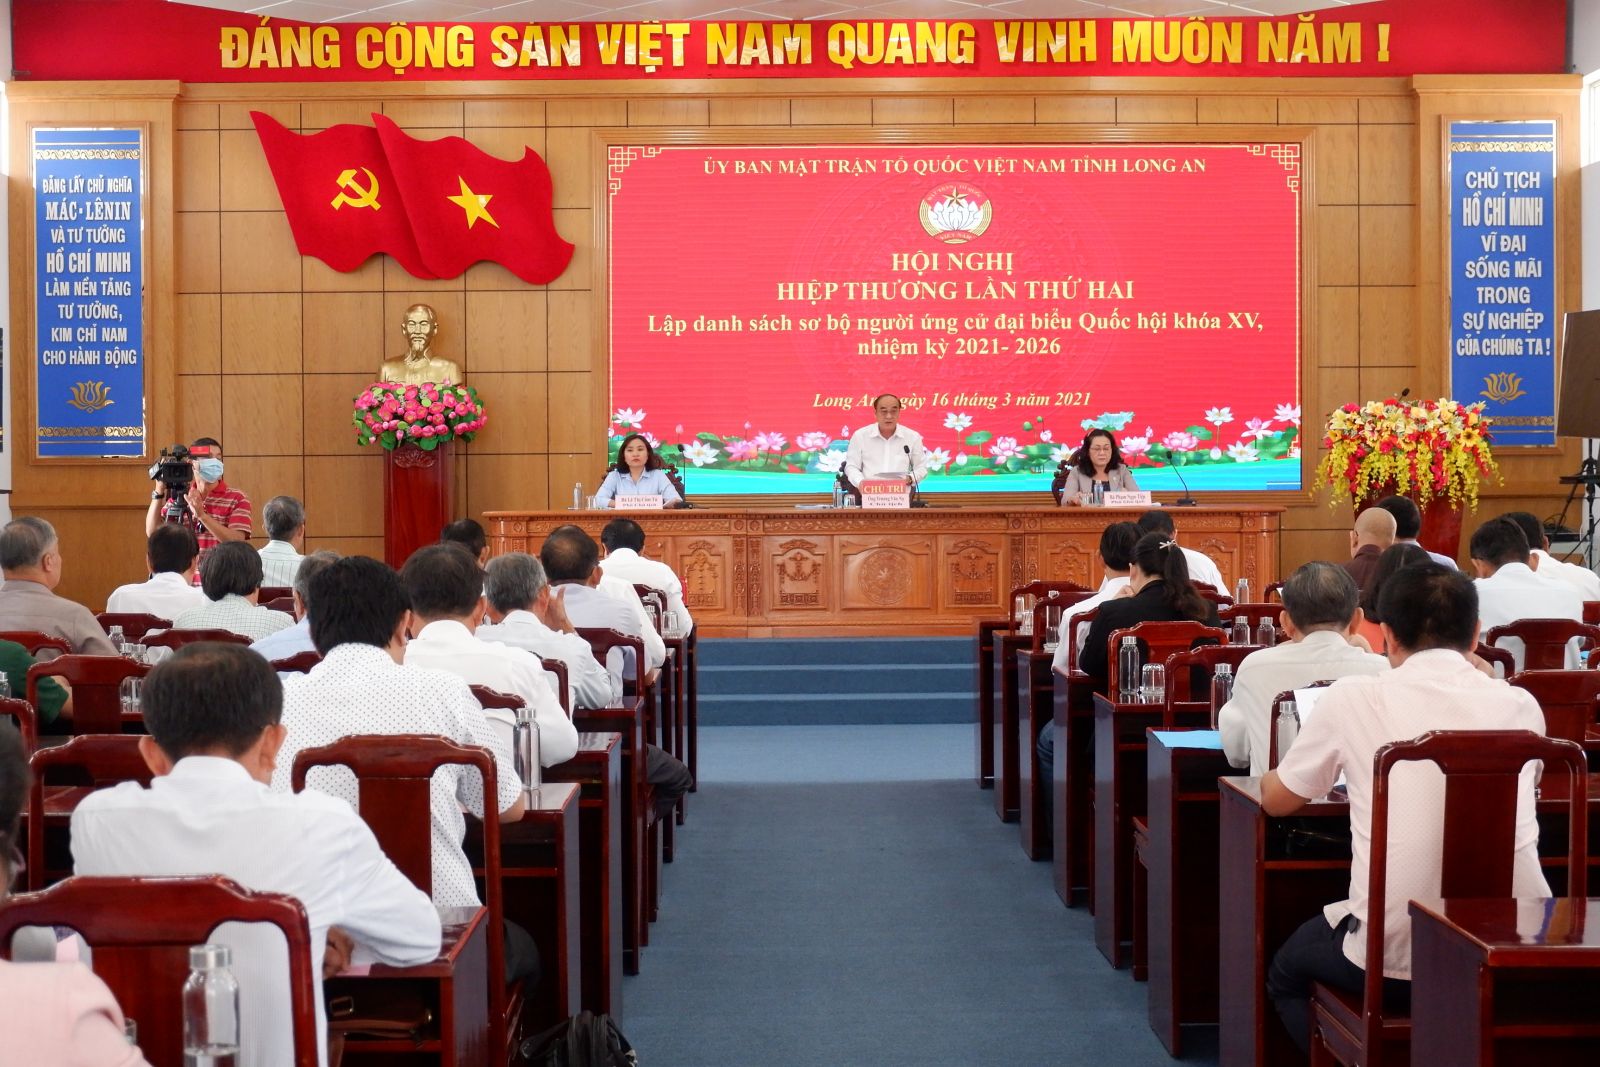 Lãnh đạo Ủy Ban Mặt trận Tổ quốc Việt Nam tỉnh Long An, chủ trì Hội nghị hiệp thương lần thứ 2. (Ảnh: Trần Thoa)